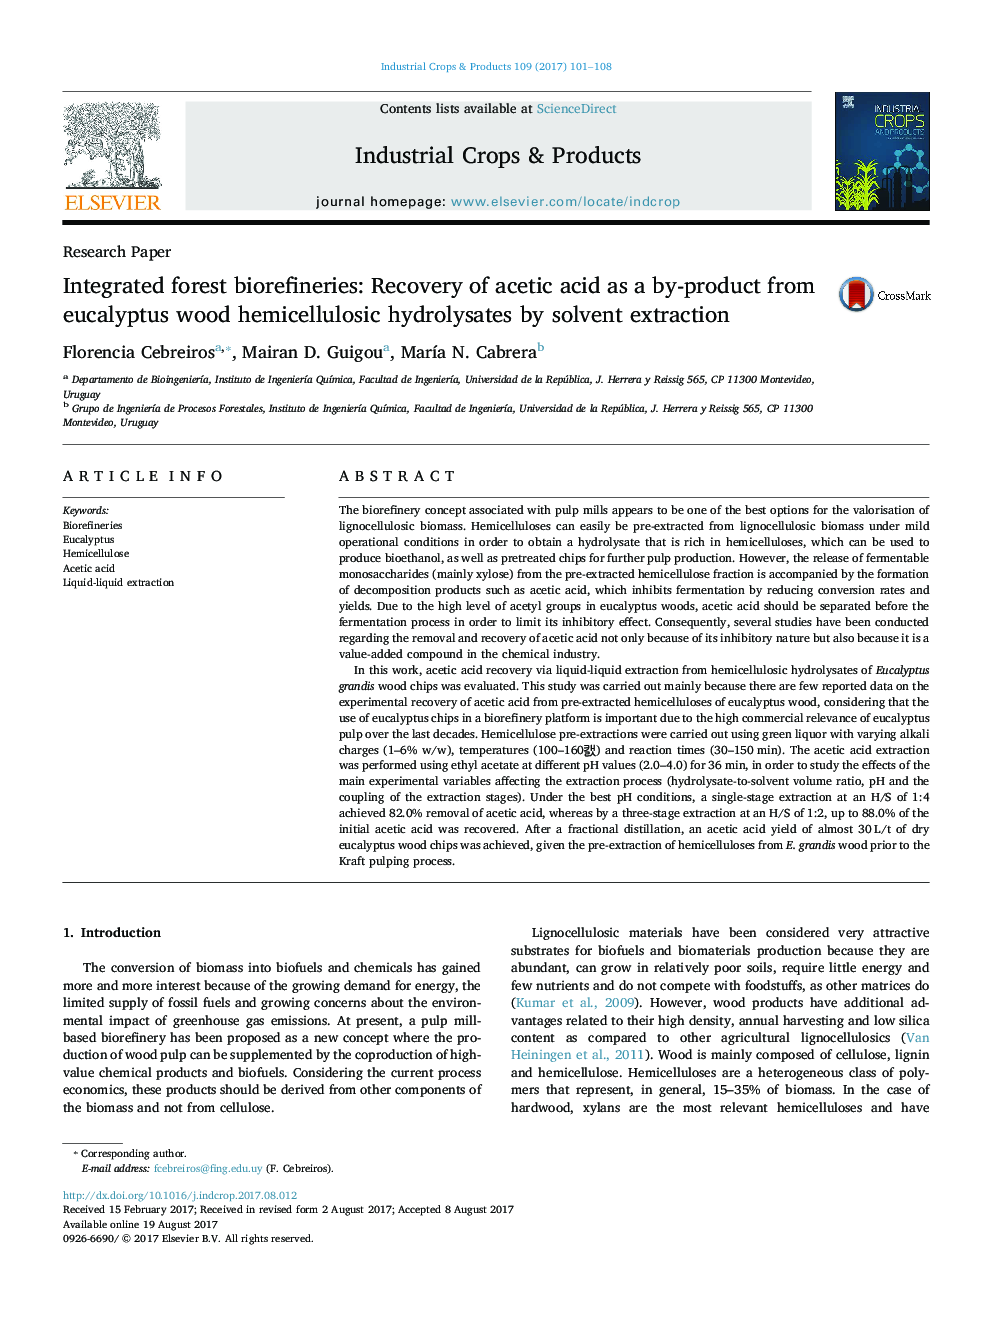 مقاله پژوهشیپایگاه های زیستی جنگل های مجتمع: بازیابی اسید استیک به عنوان یک محصول جانبی از هیدرولیزهای هیکلولوزیک چوب اکالیپتوس با استفاده از استخراج حلال 